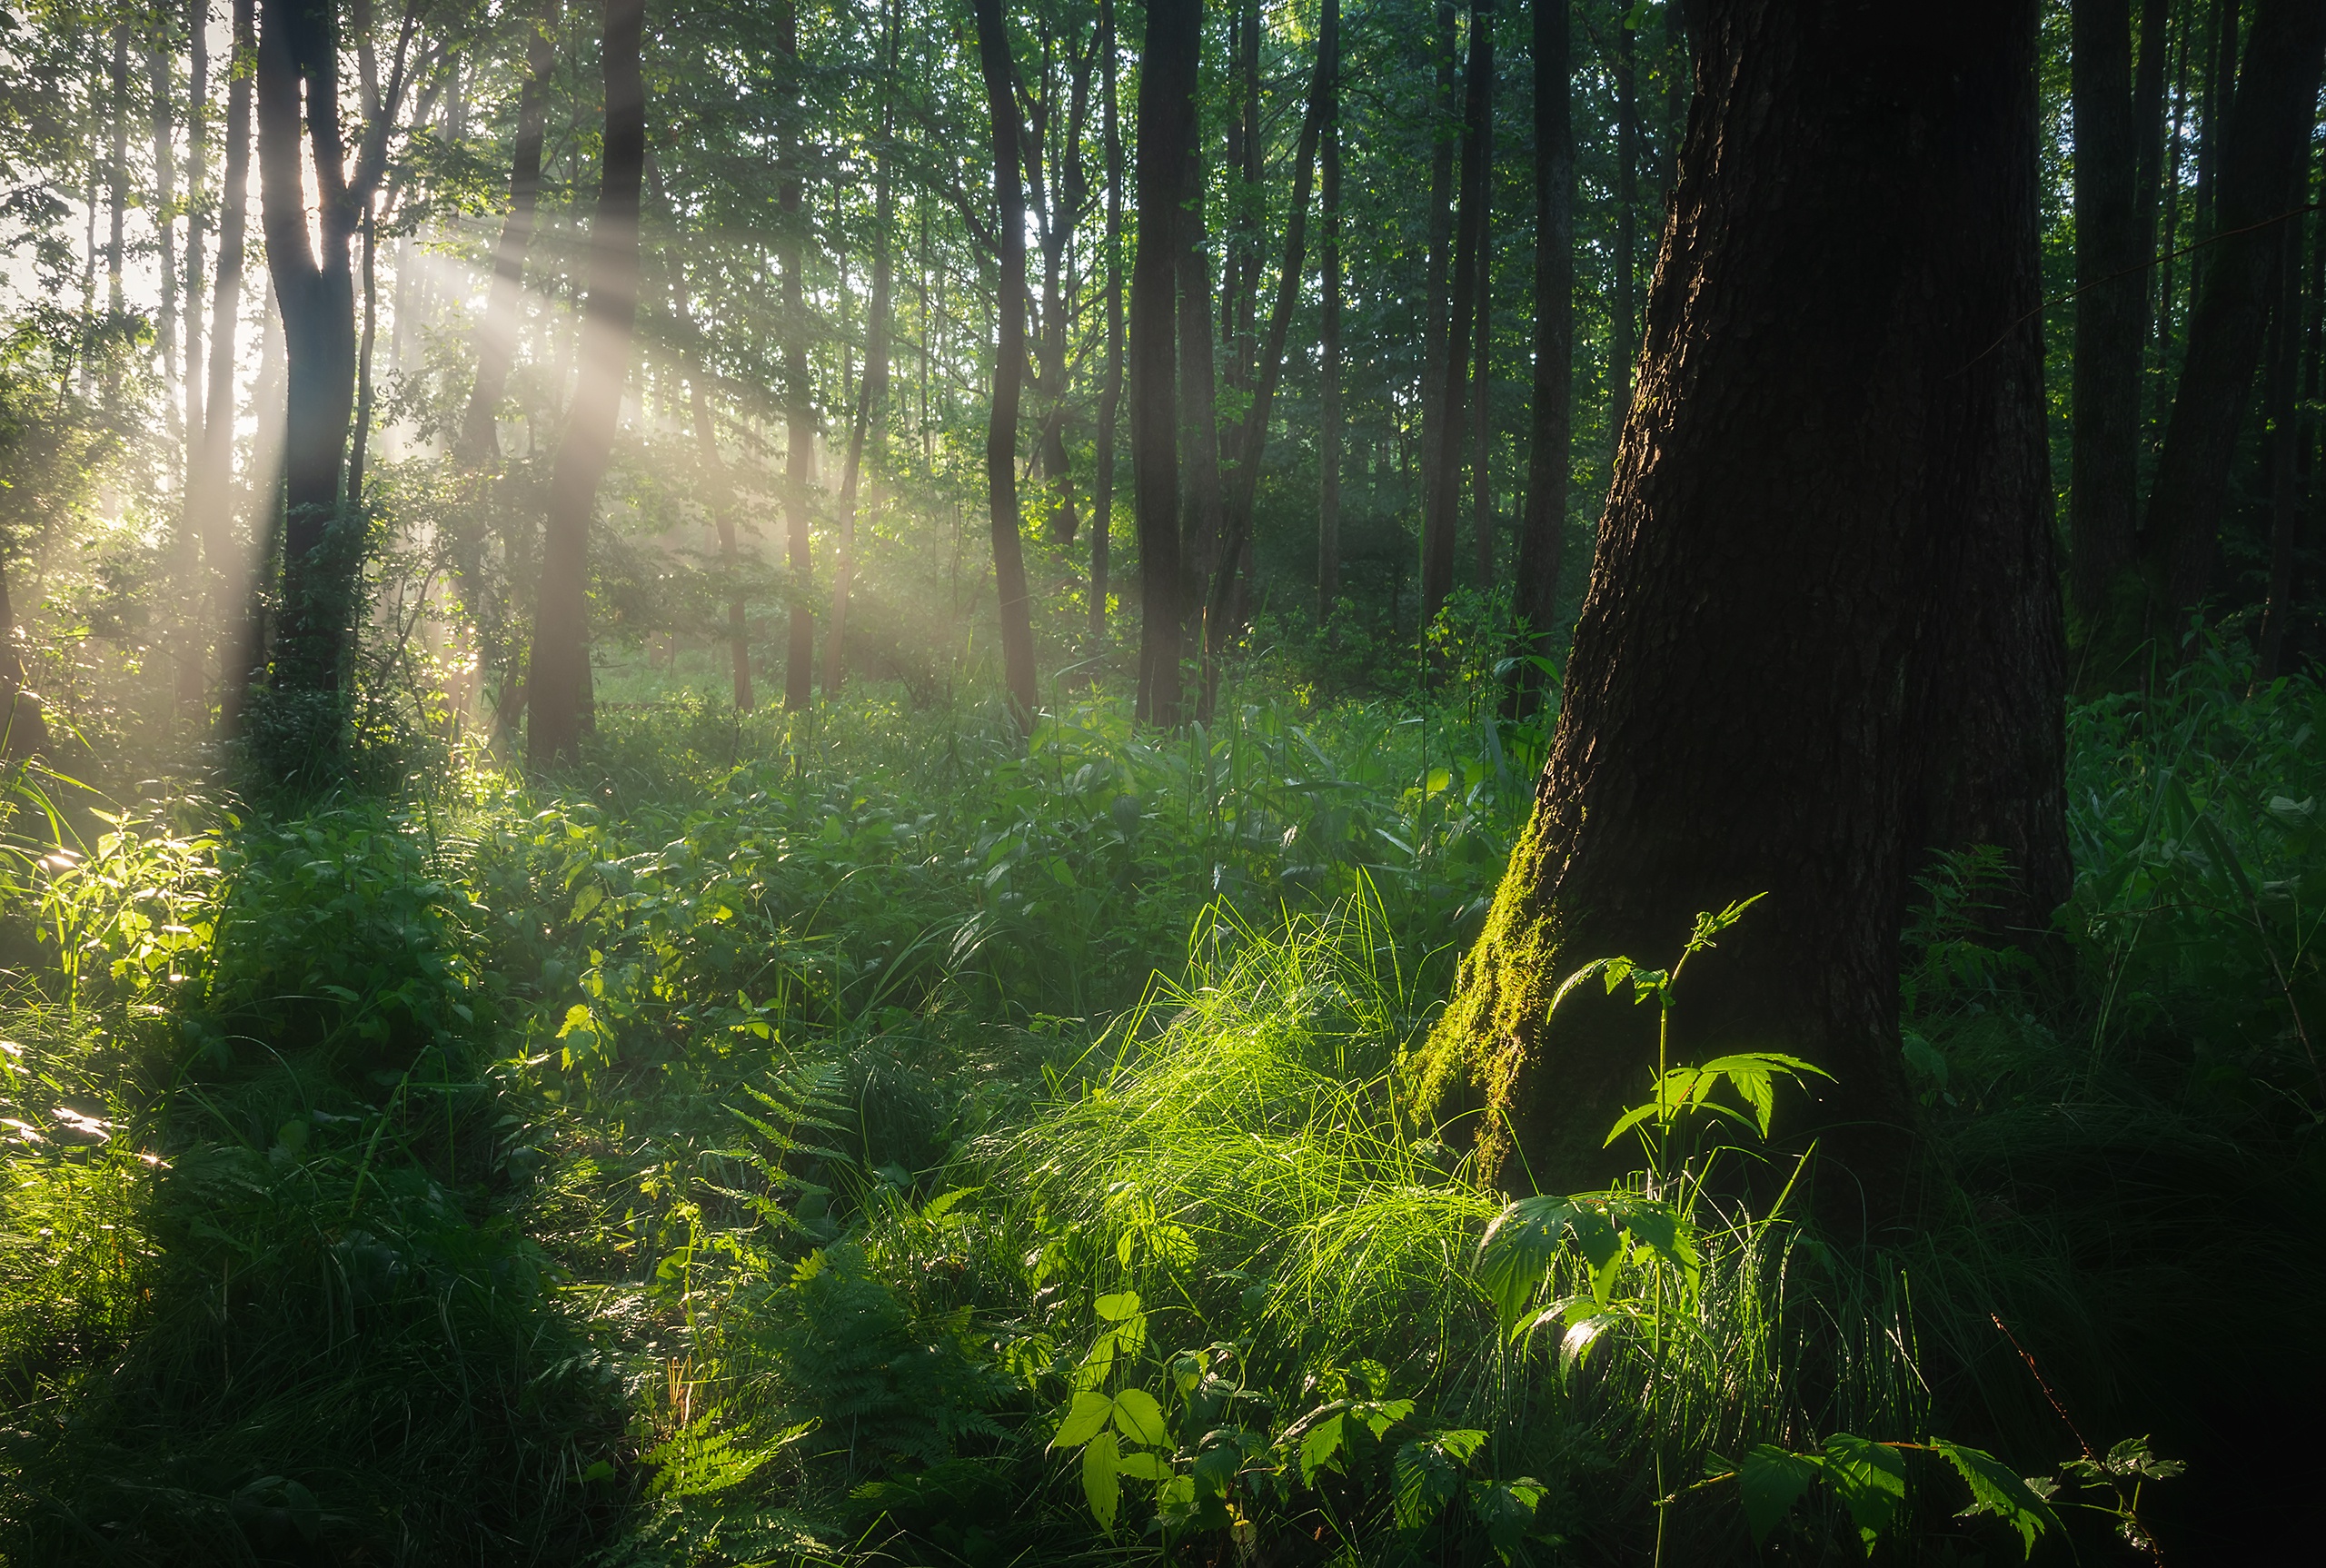 Обоя зелёный лес. Роль света в лесу. Фото с хорошим освещением лес. Лес свет от смотрителя.